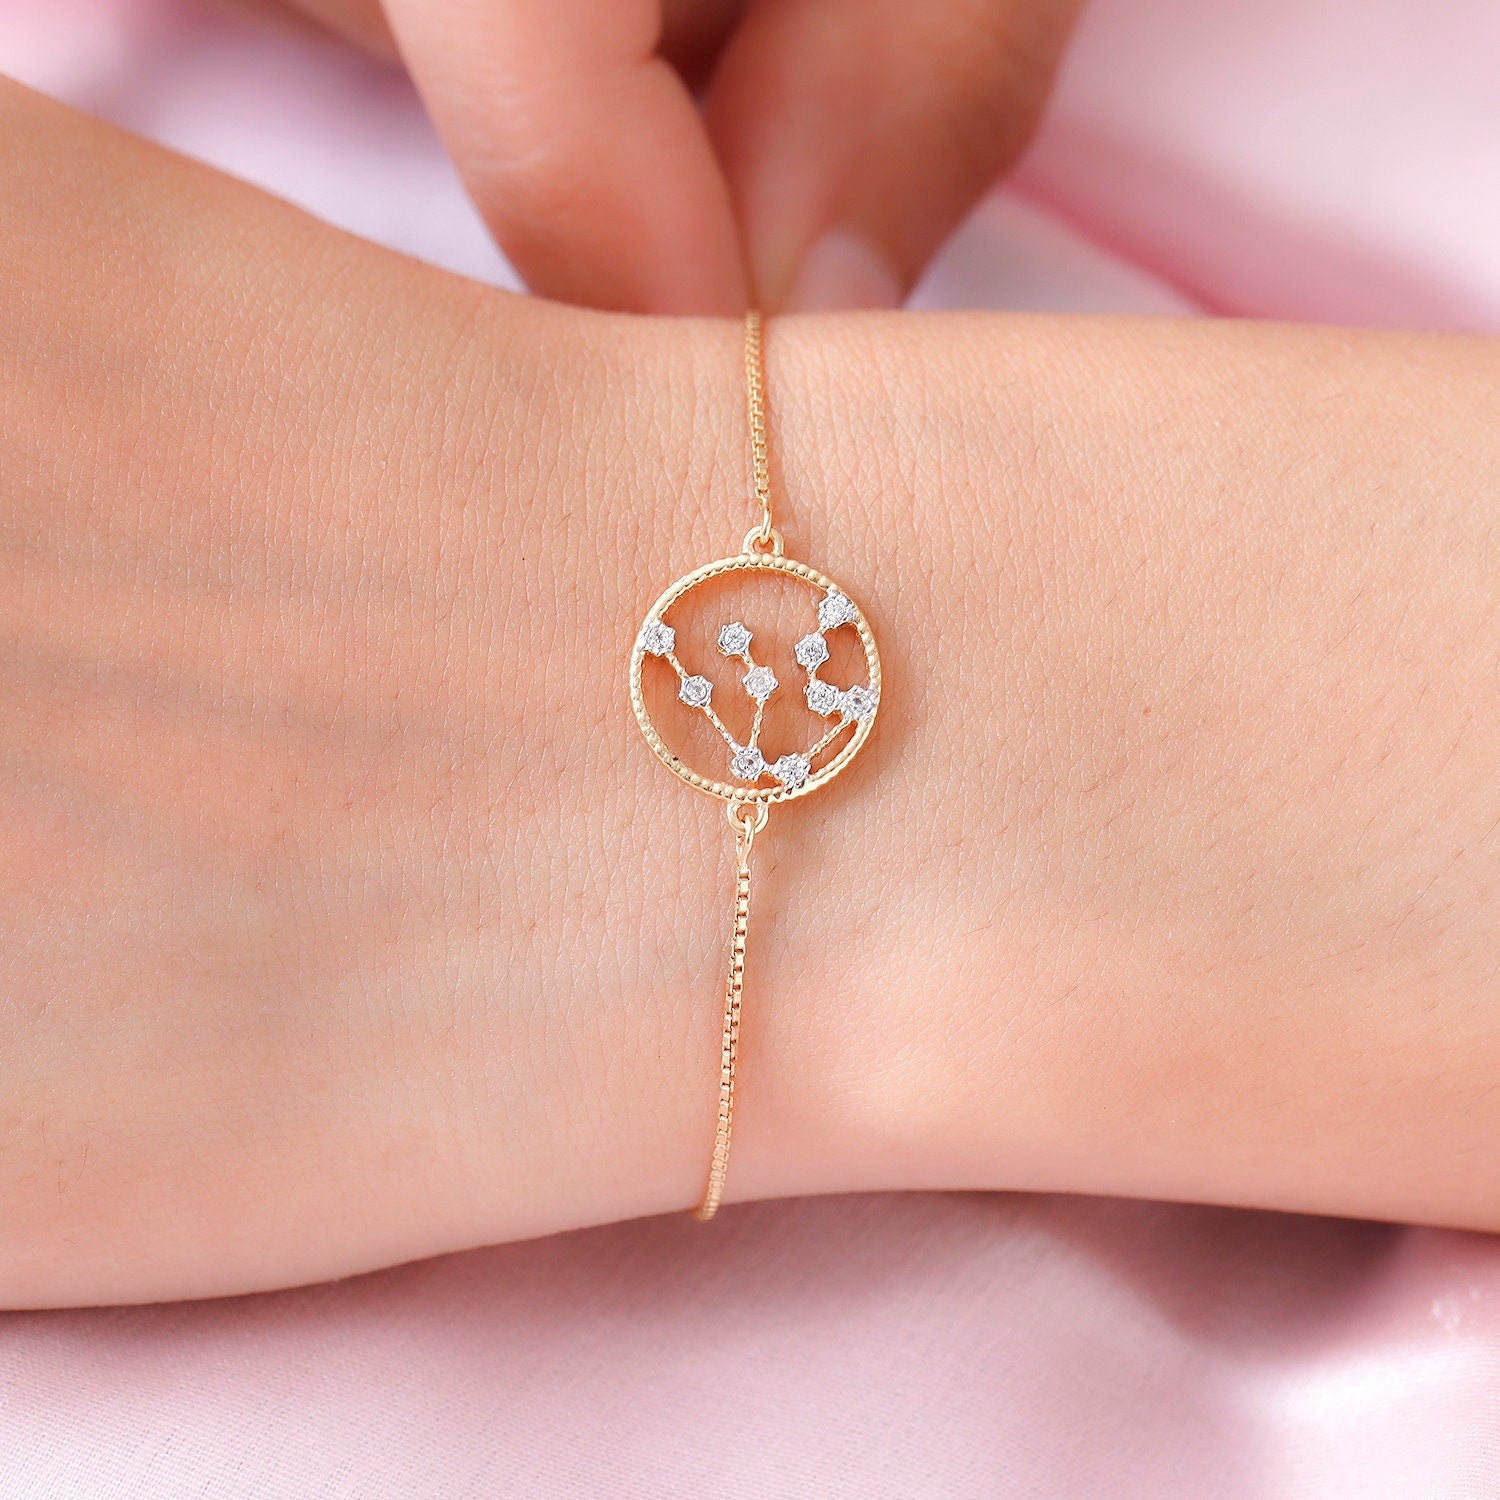 Genuine Aquarius Constellation 925 Silver Bracelet | Star Sign Bracelet | Astrology bracelet | Zodiac Bracelet for Women | Gift for her